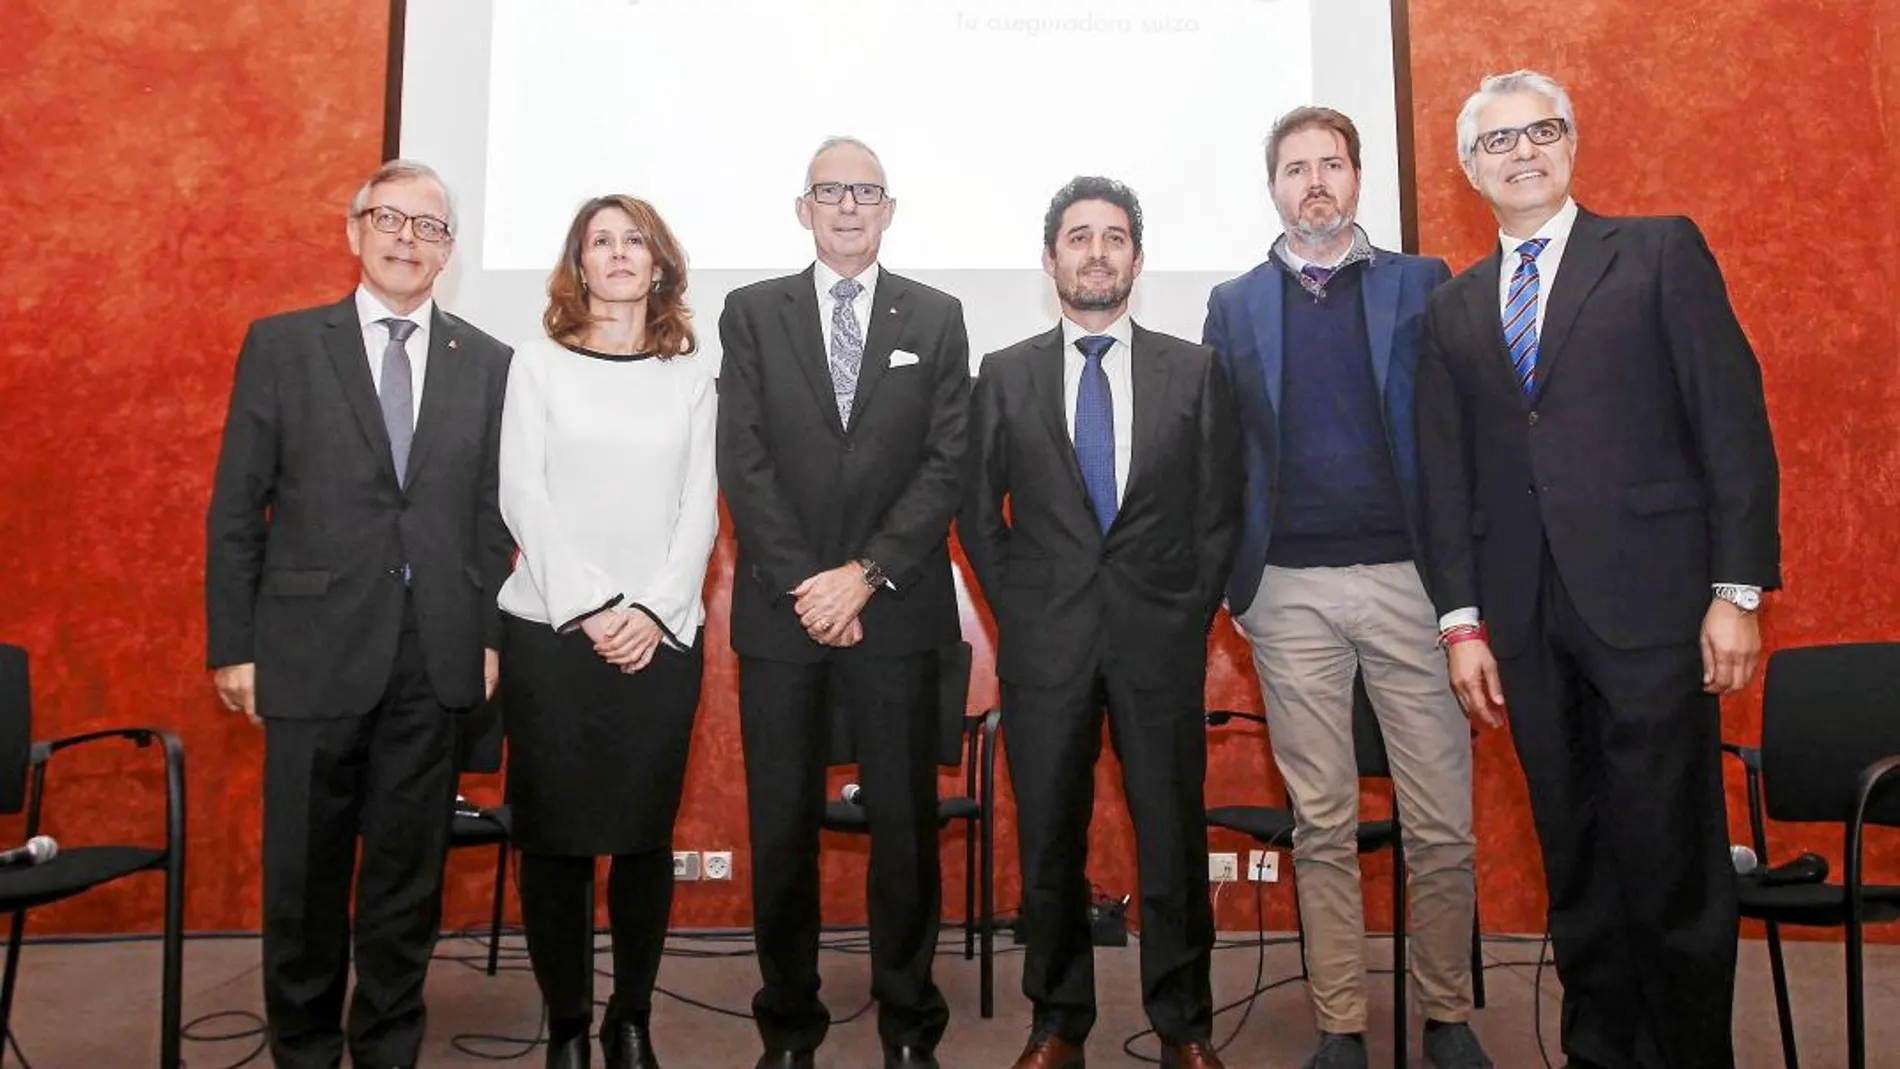 Presentación en Sevilla con Javier García, Julia Casanova, José María Paagman, Antonio García, Carlos Martín y Agustín Bravo, en la sede de Helvetia Seguros